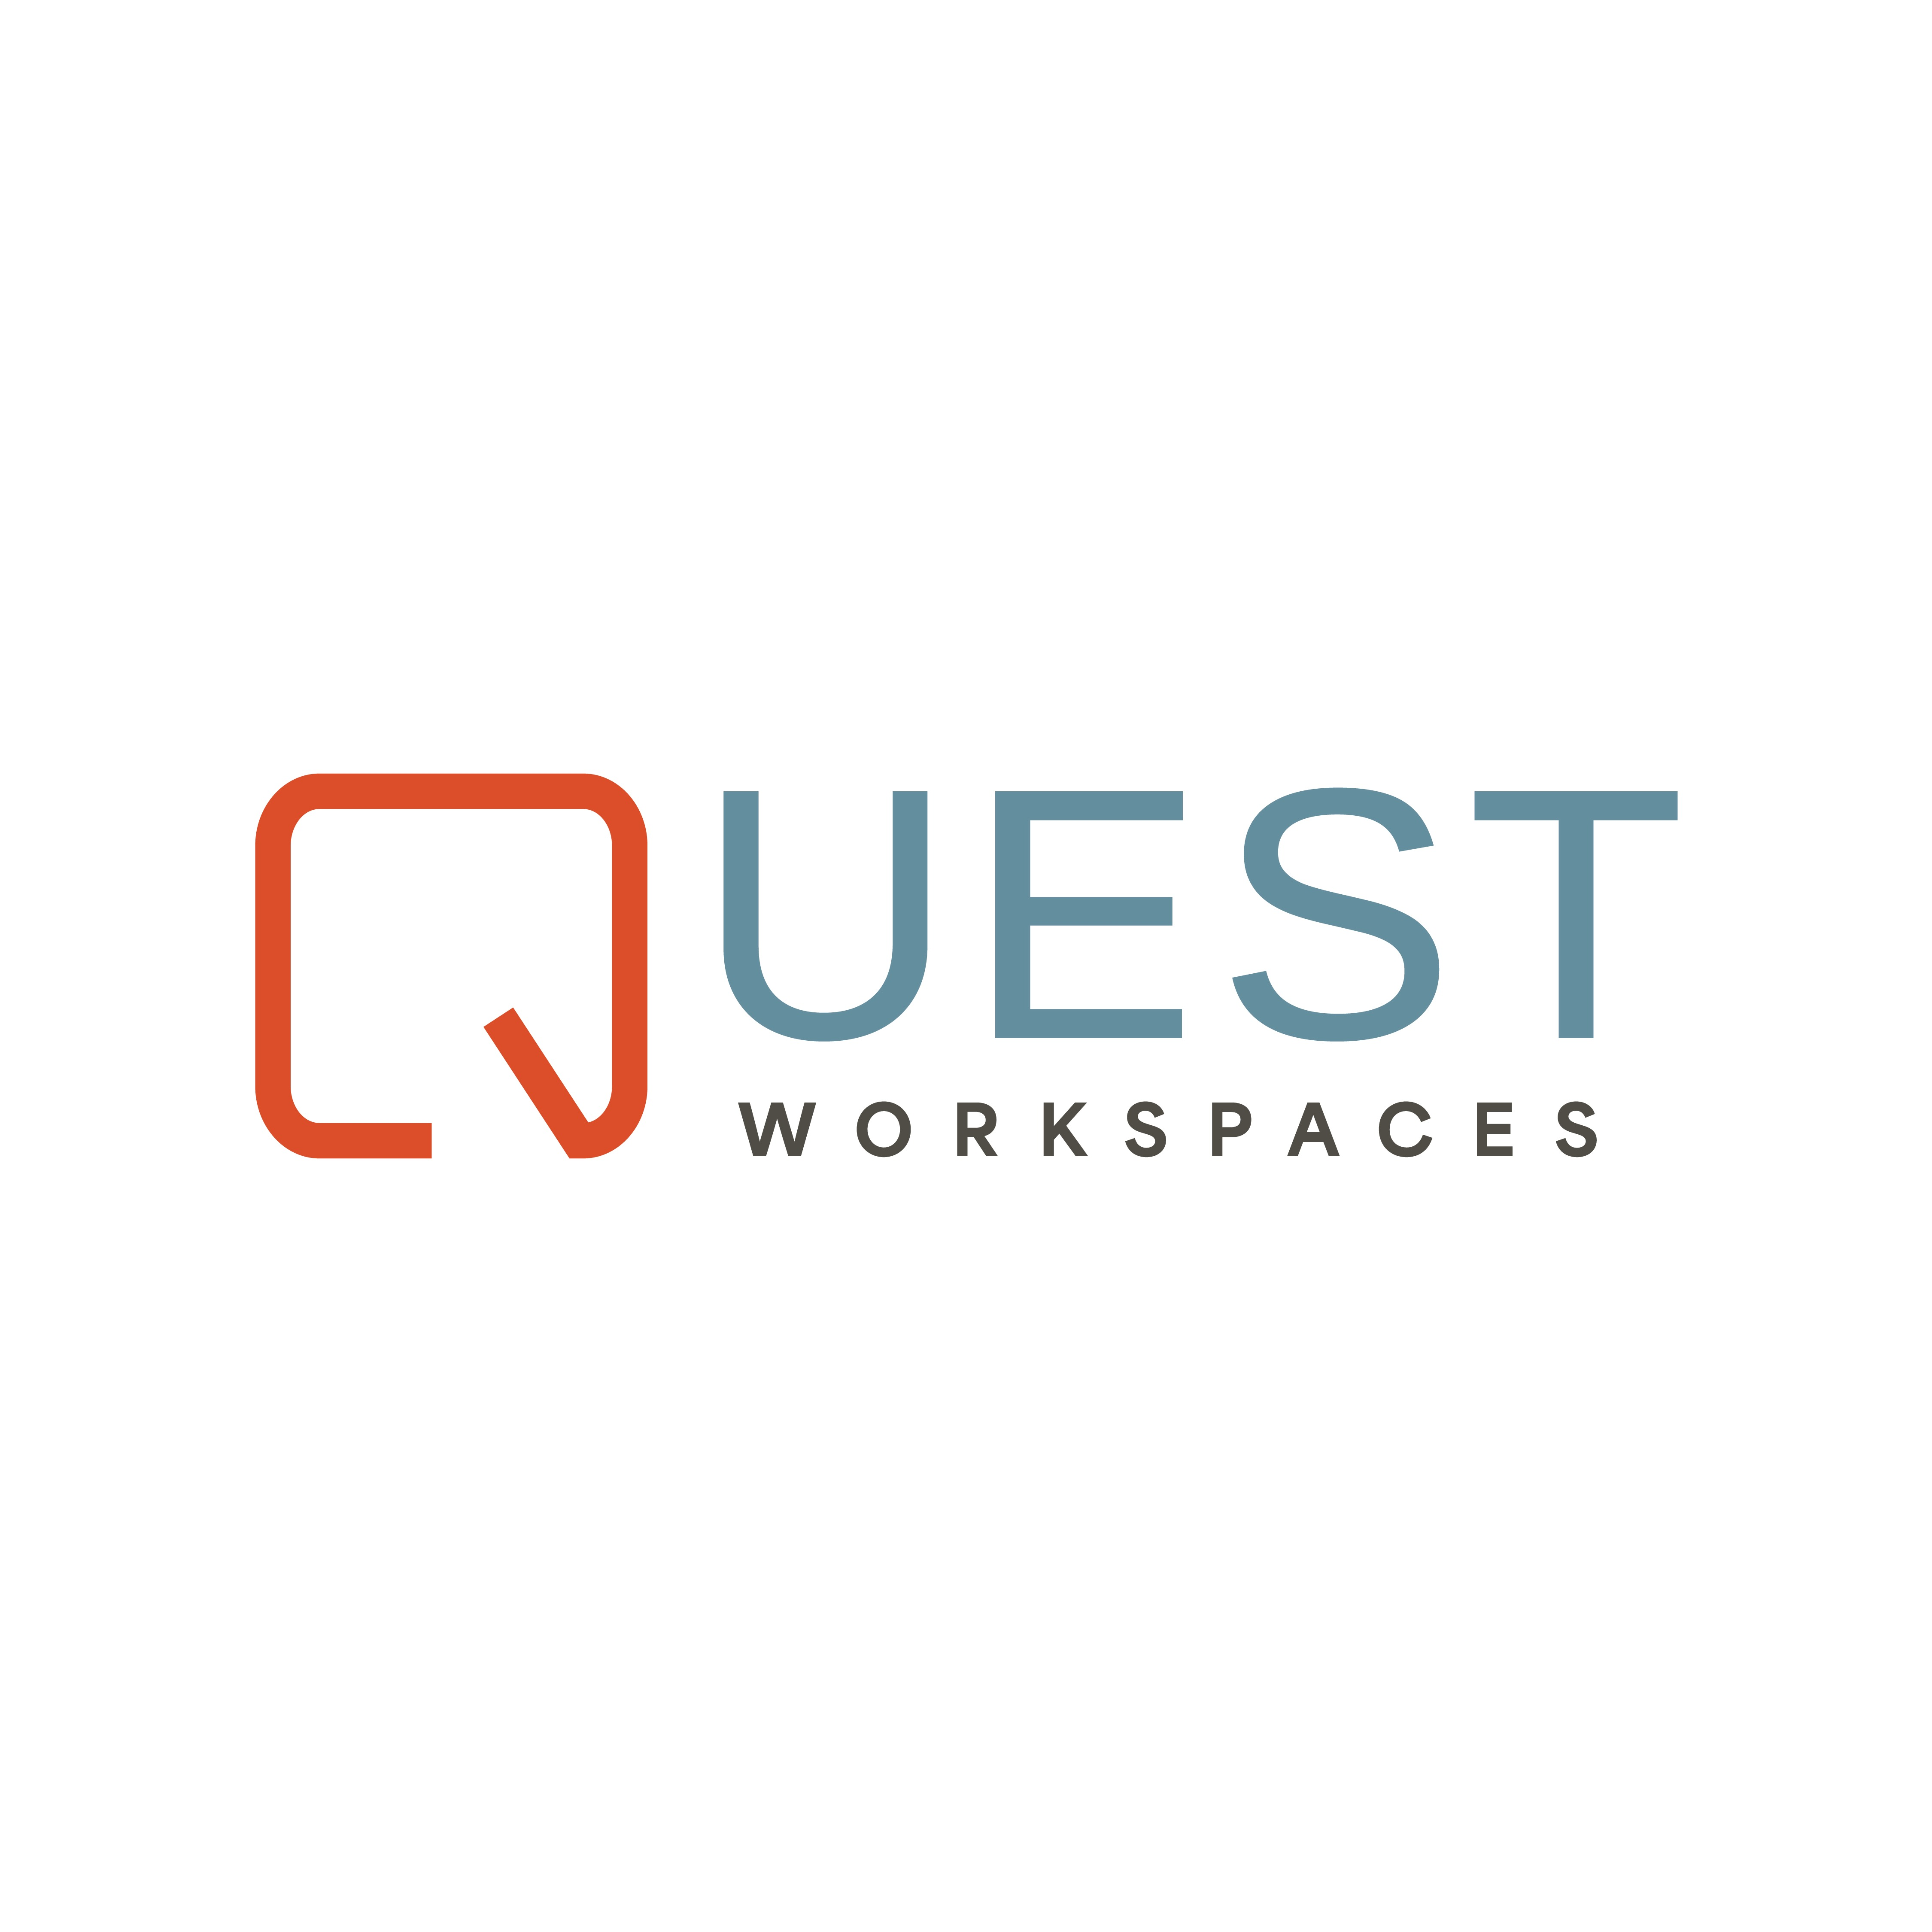 Quest Workspaces Fort Lauderdale - Fort Lauderdale, FL 33301 - (954)356-0400 | ShowMeLocal.com